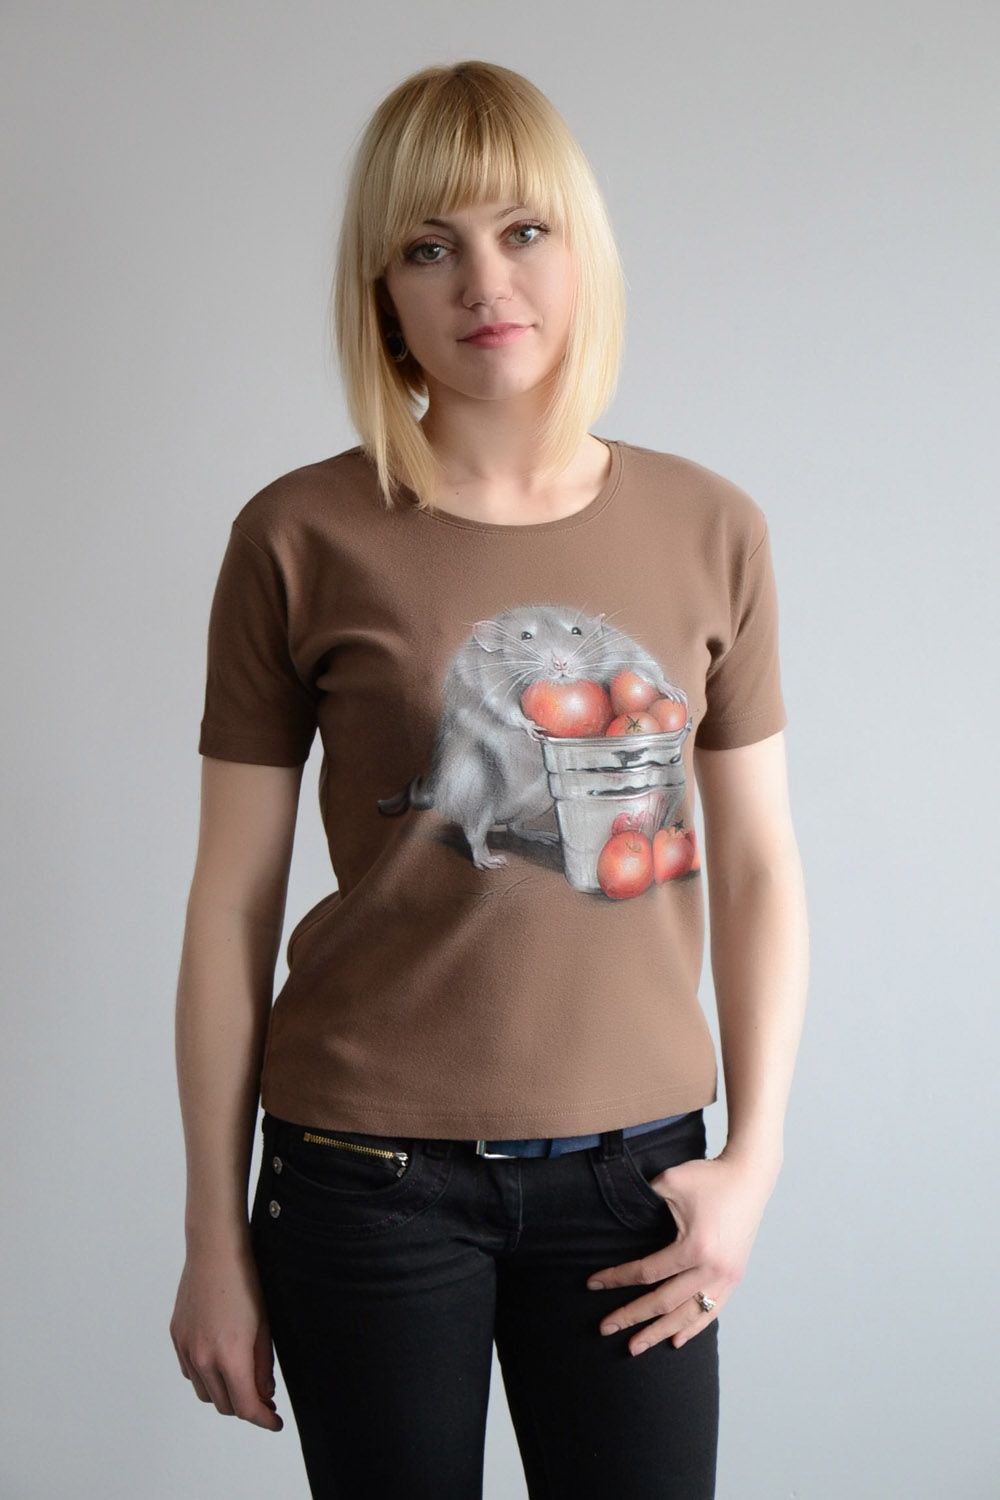 Женская футболка с росписью коричневая фото 1